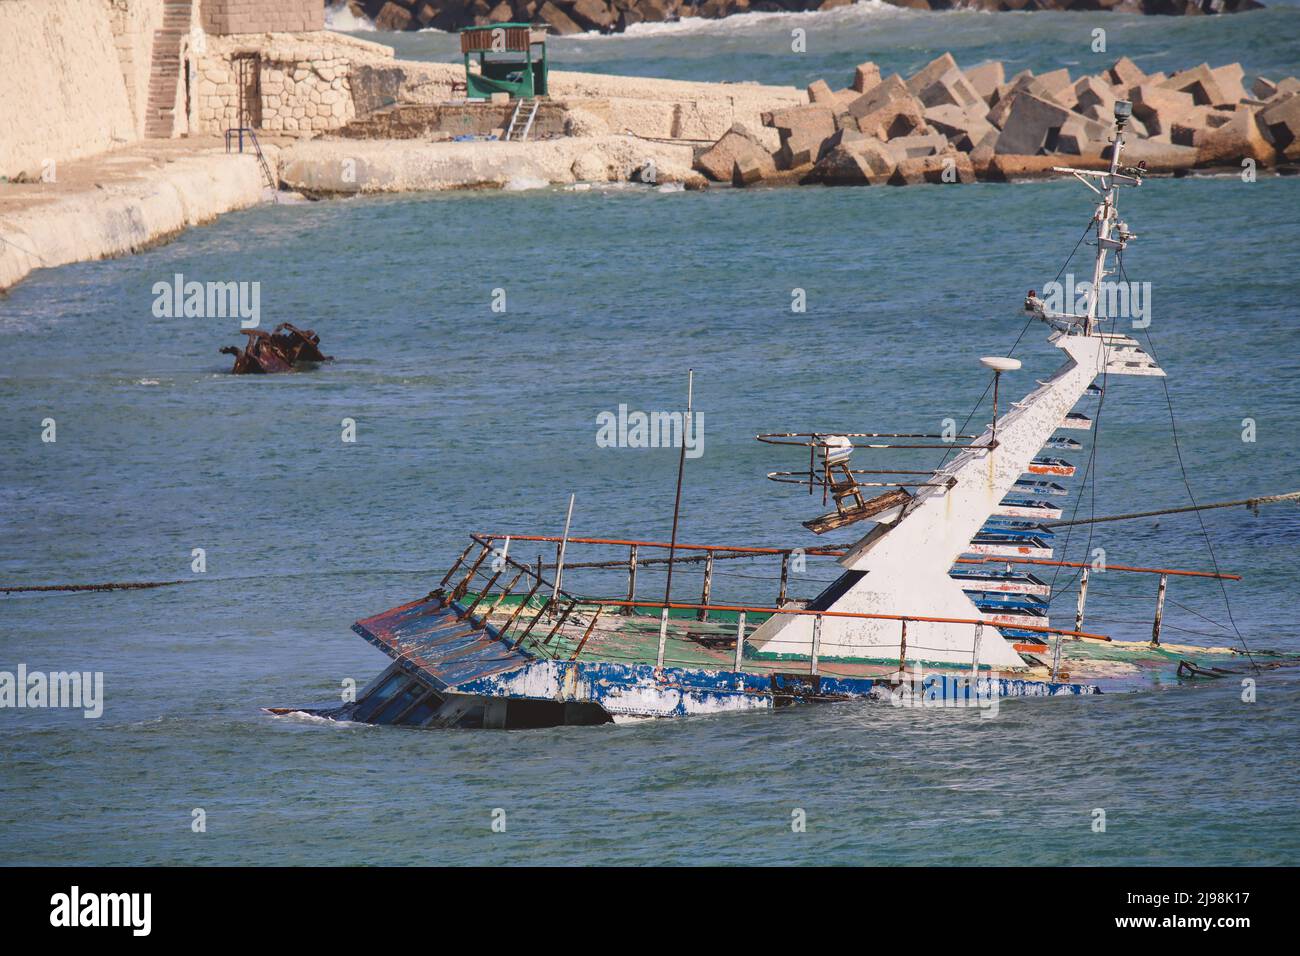 Vieux bateaux rouillés dans l'eau bleue du port d'Alexandrie, Egypte Banque D'Images